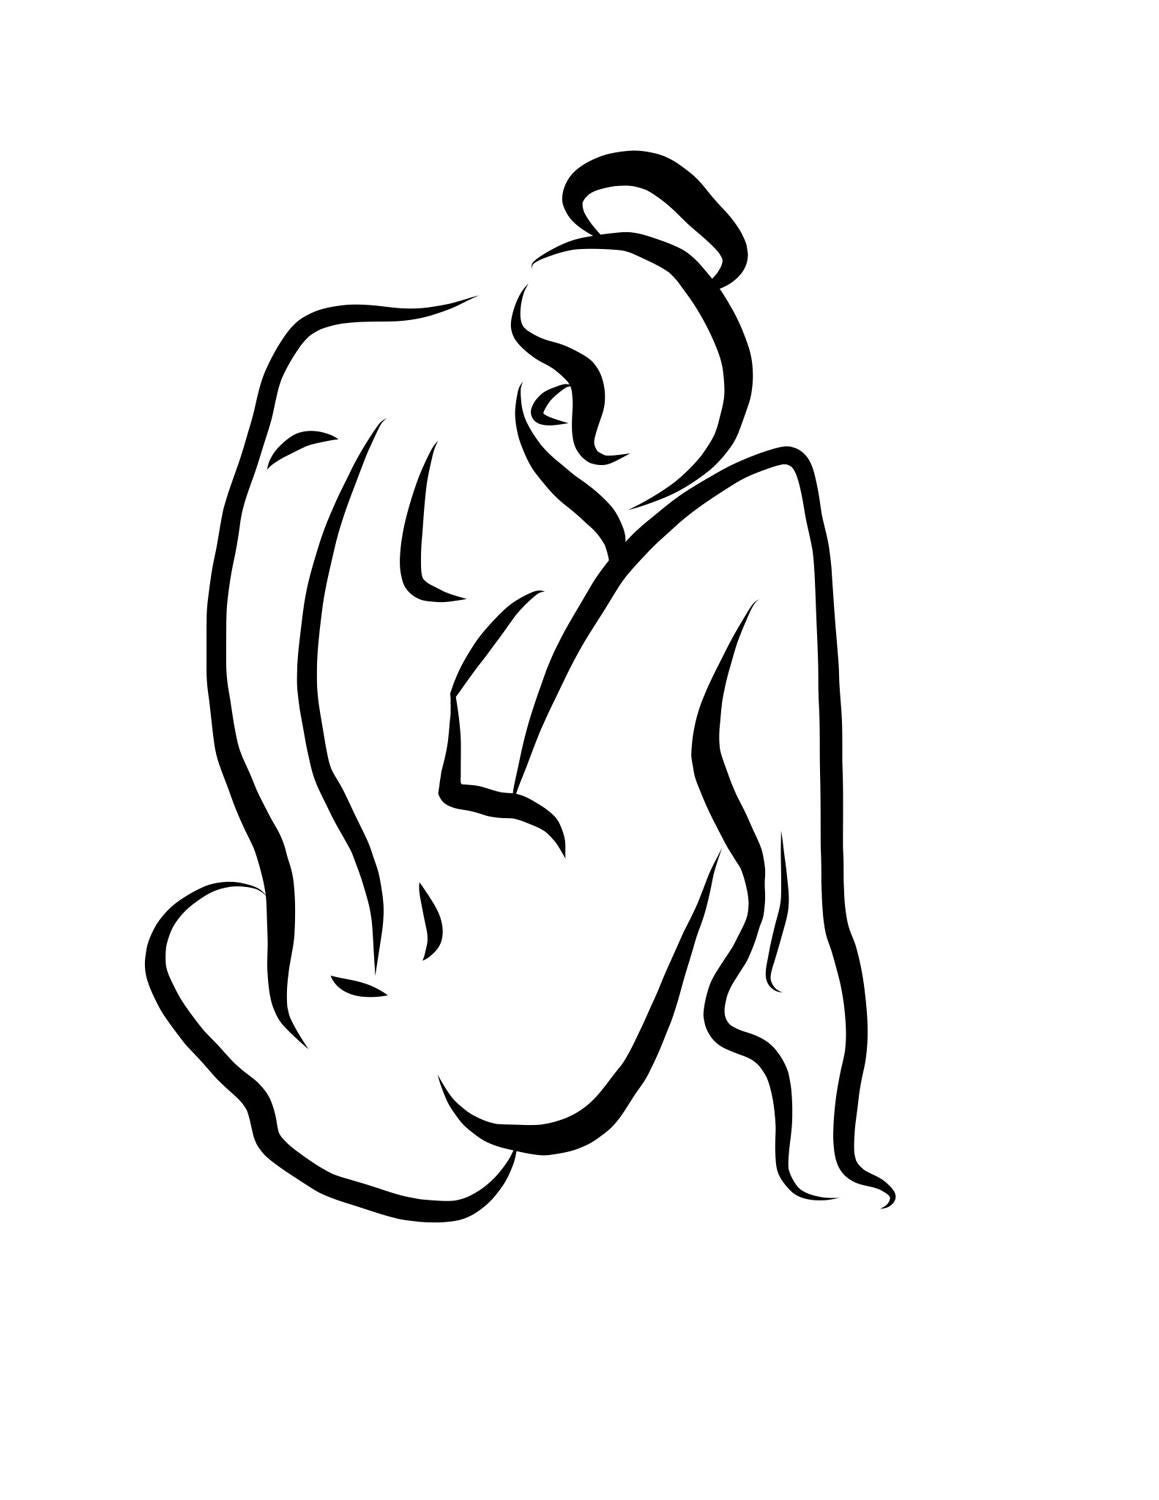 Michael Binkley Nude Print - Haiku #15 - Digital Vector Drawing Seated Female Nude Woman Figure from Behind